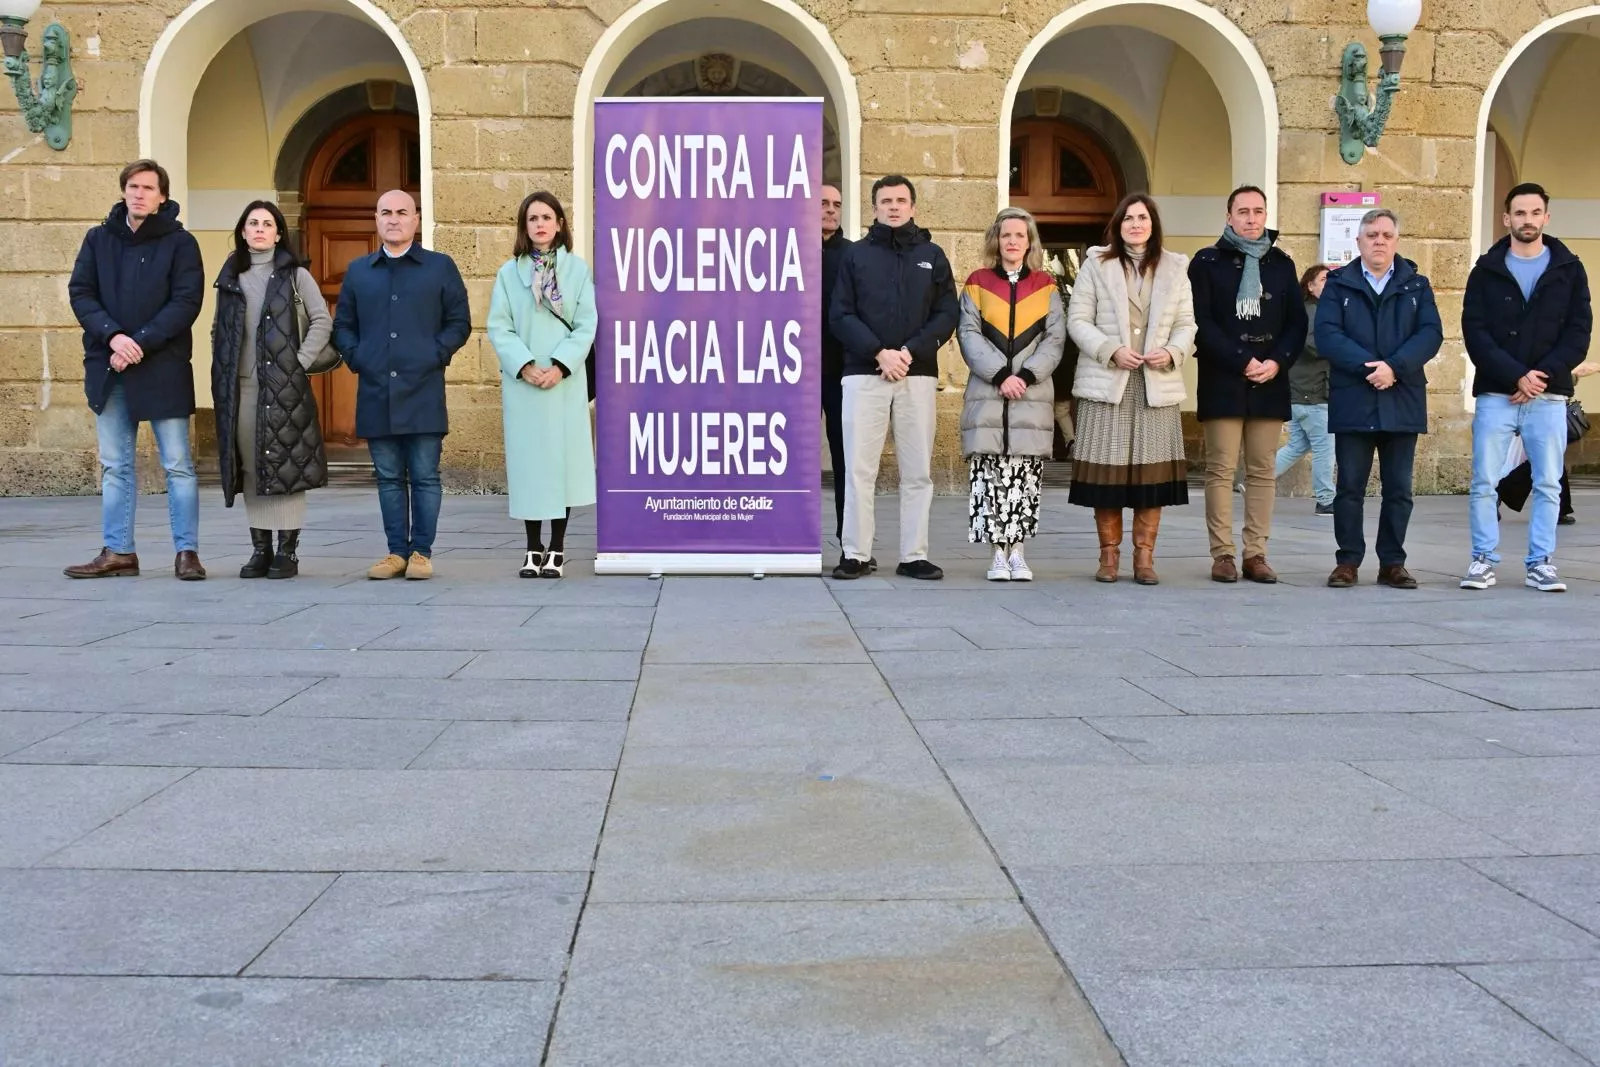 Minuto de silencio frente a las puertas del Ayuntamiento de Cádiz. 